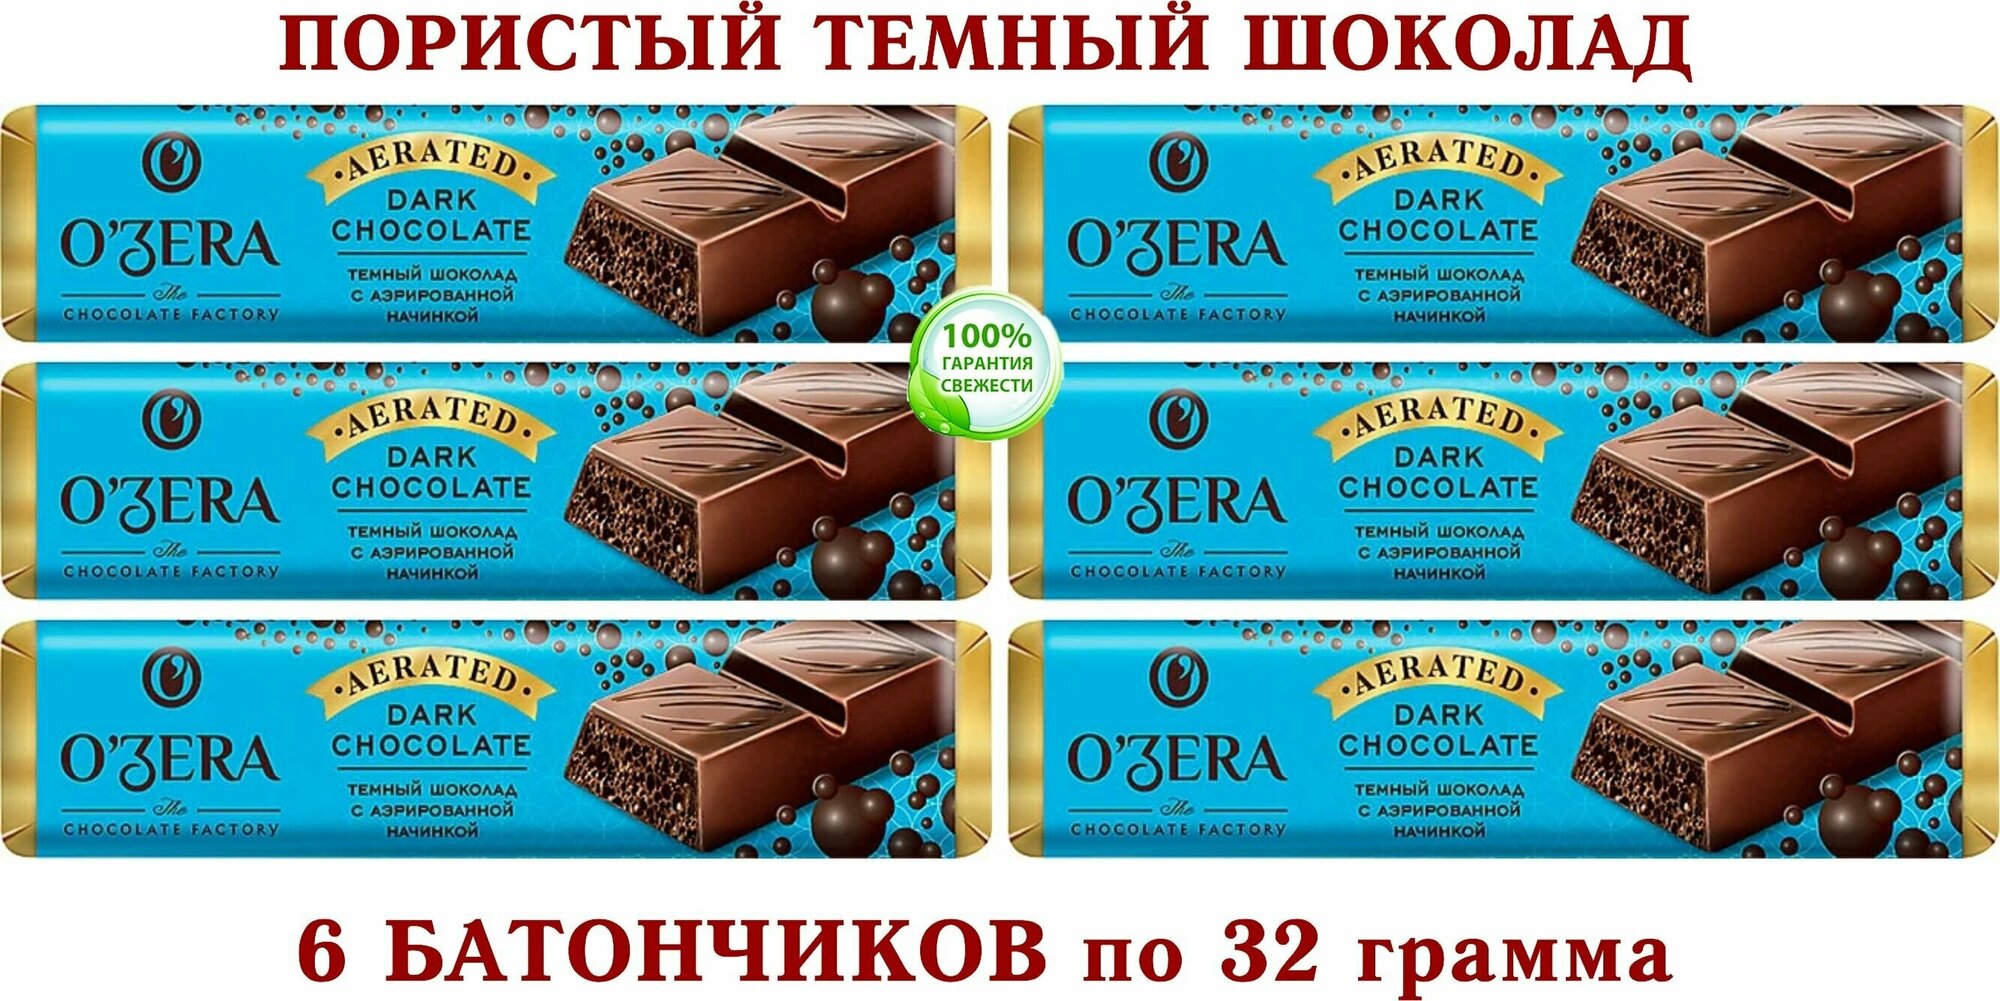 Шоколадный батончик Aerated, "OZera", темный пористый шоколад 6 штук по 32 гр.